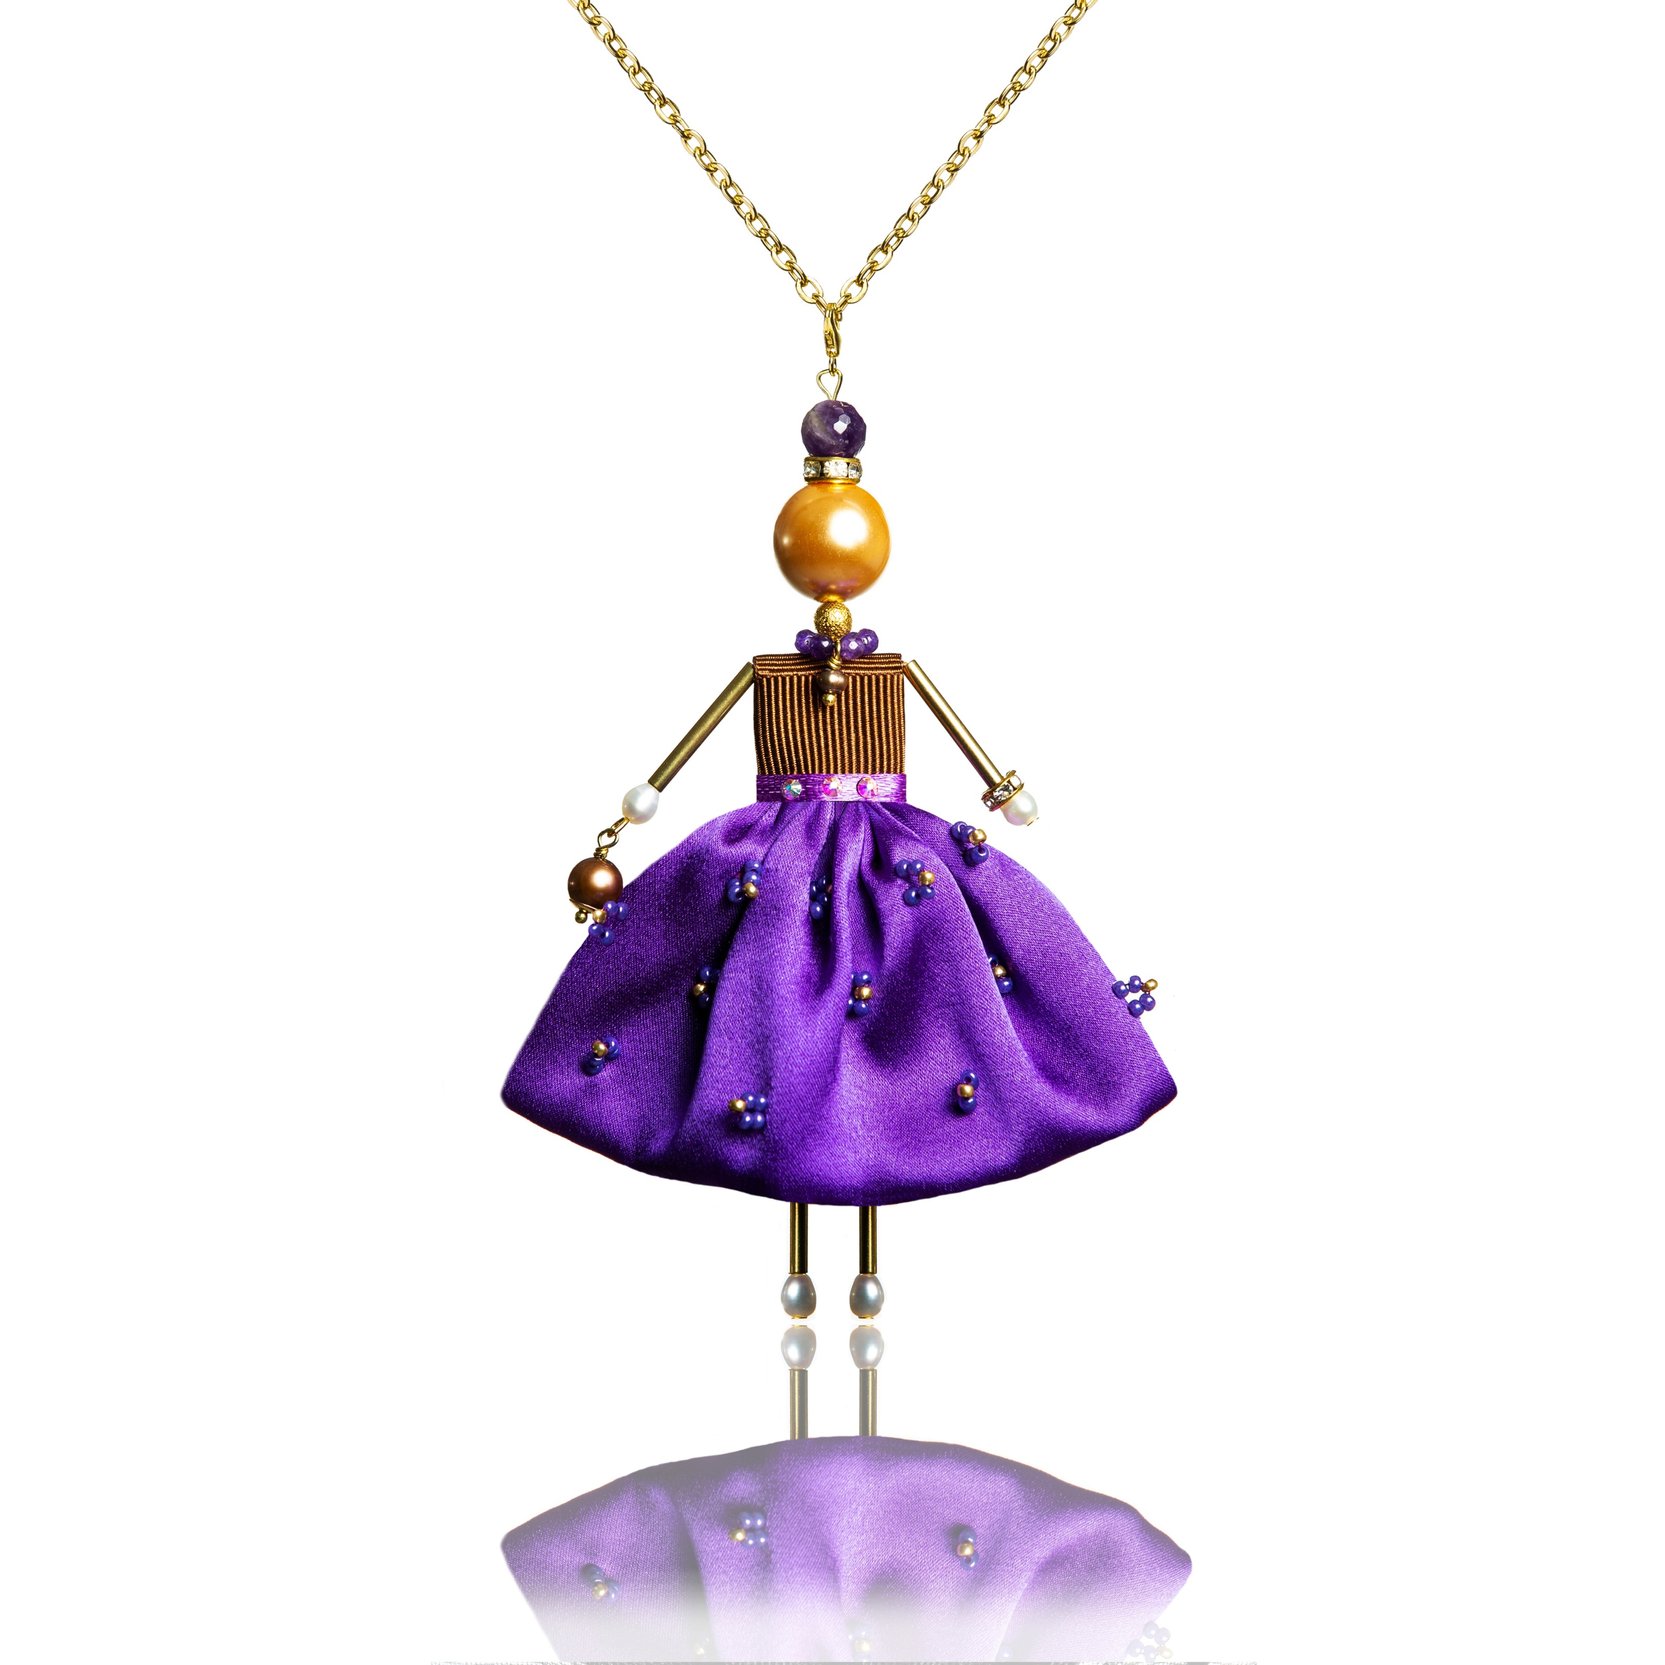 Graceful pendant doll in a purple silk skirt